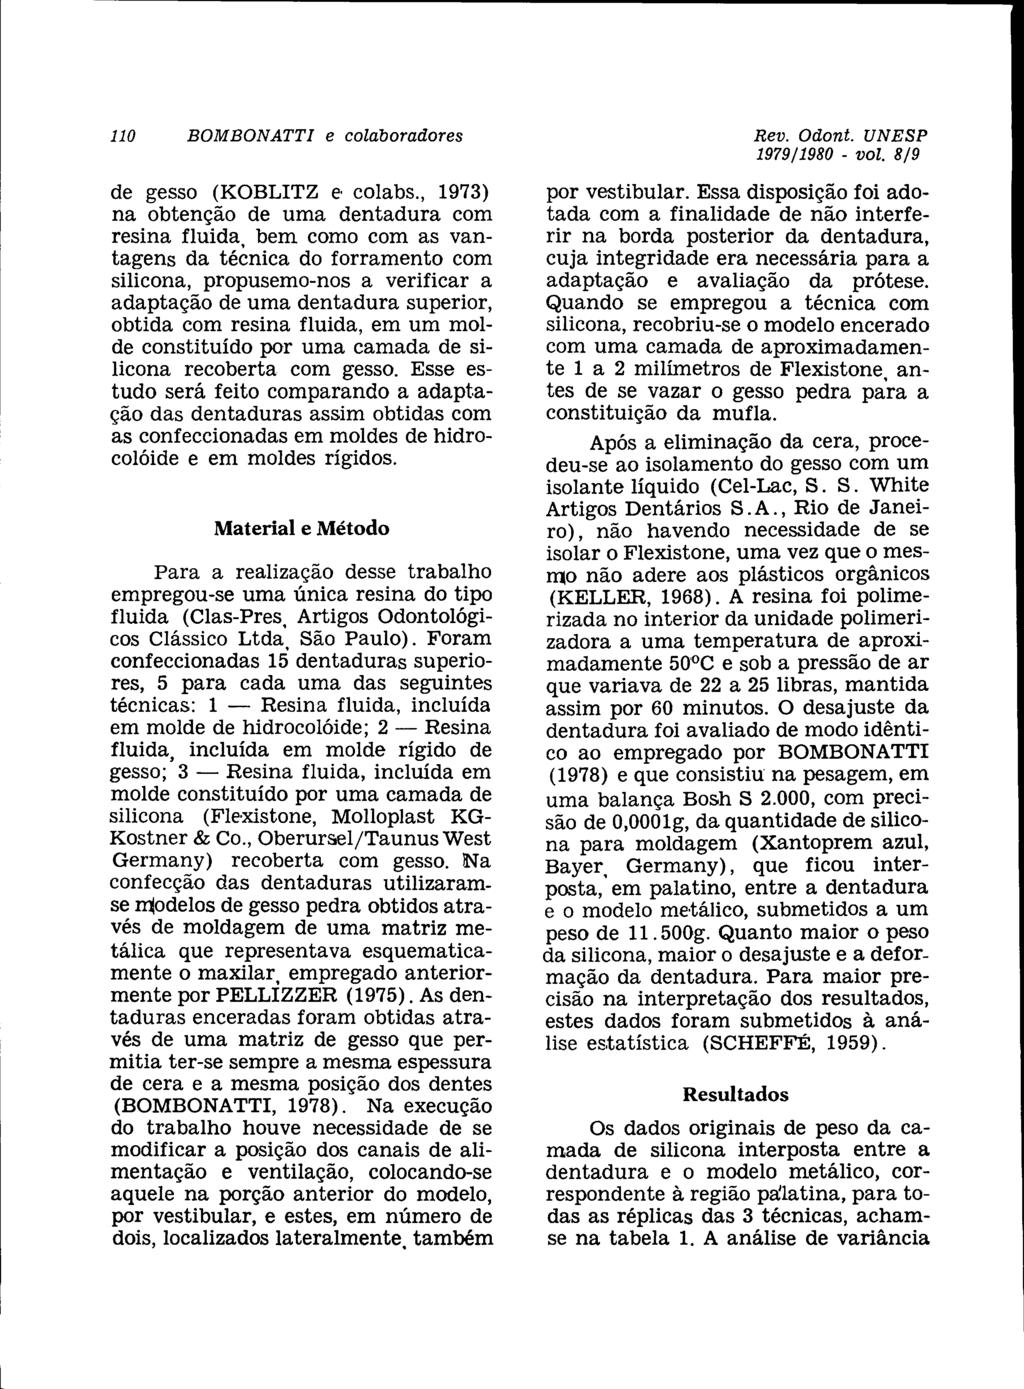 110 BOMBONATTI e colaboradores Rev. Odont. UNESP 1979/1980 - vol. 8/9 de gesso (KOBLITZ e' colabs.